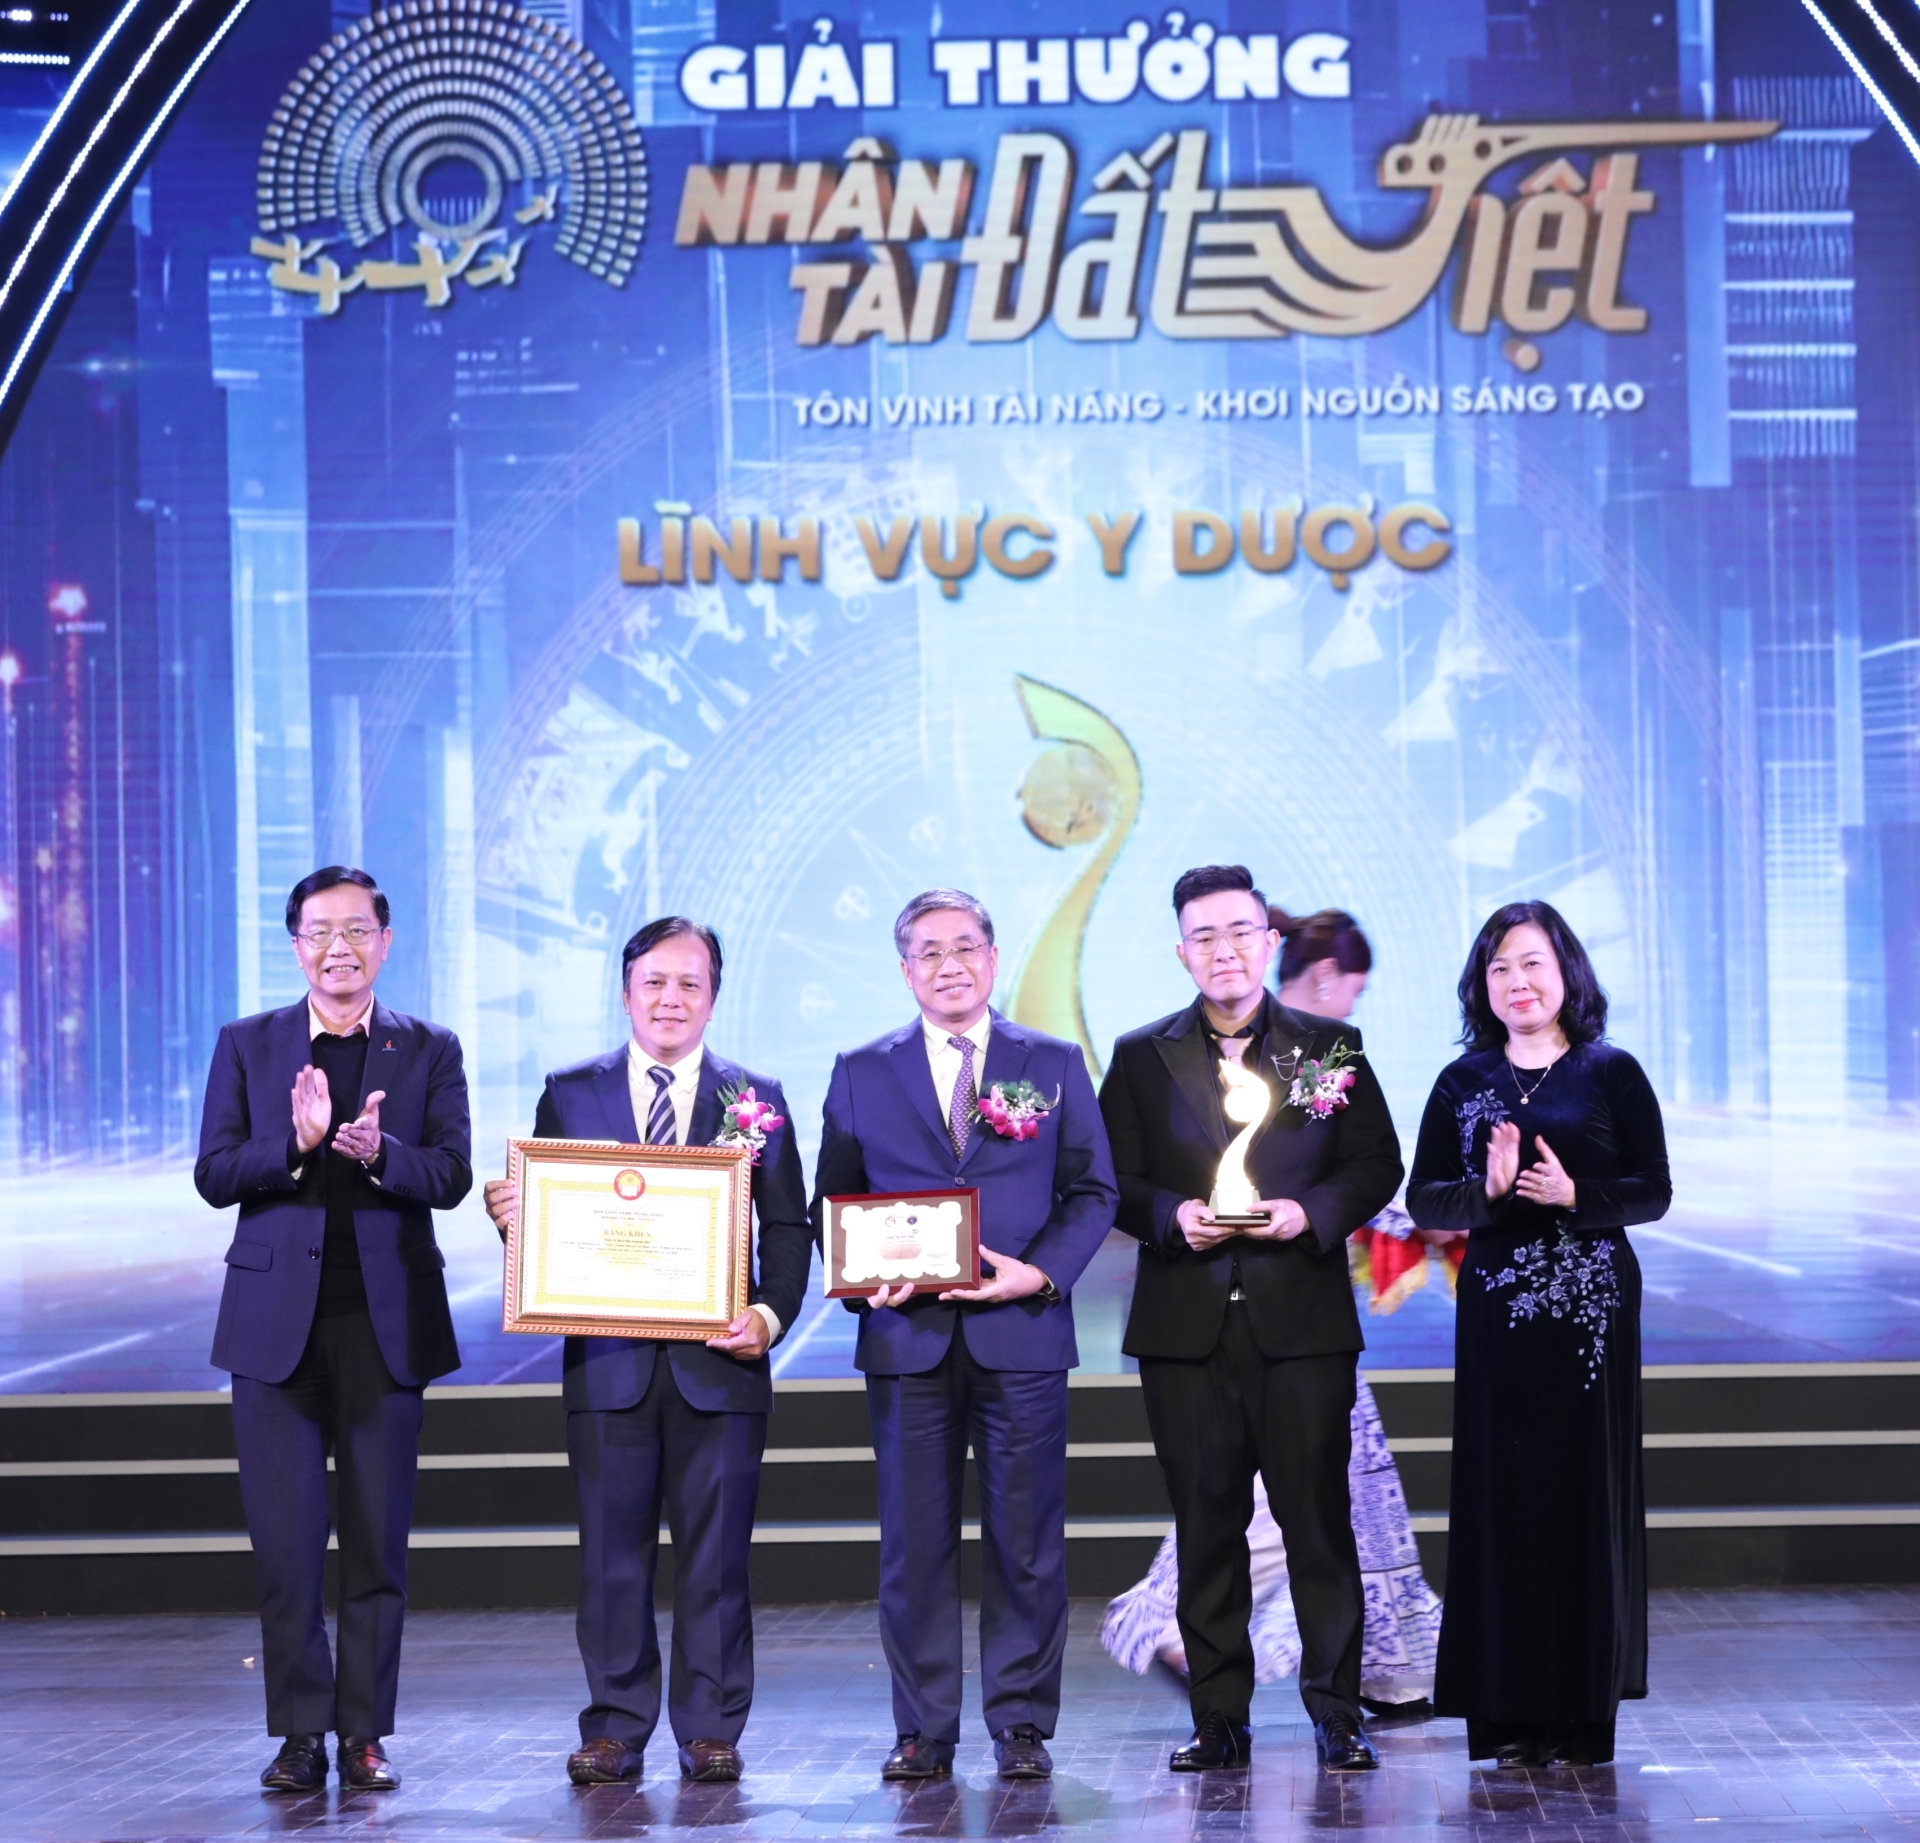 Ban Tổ chức trao giải cho tác giả, nhóm tác giải xuất sắc trong lĩnh vực Y Dược, giải thưởng Nhân tài Đất Việt lần thứ 17. (Ảnh: TA)